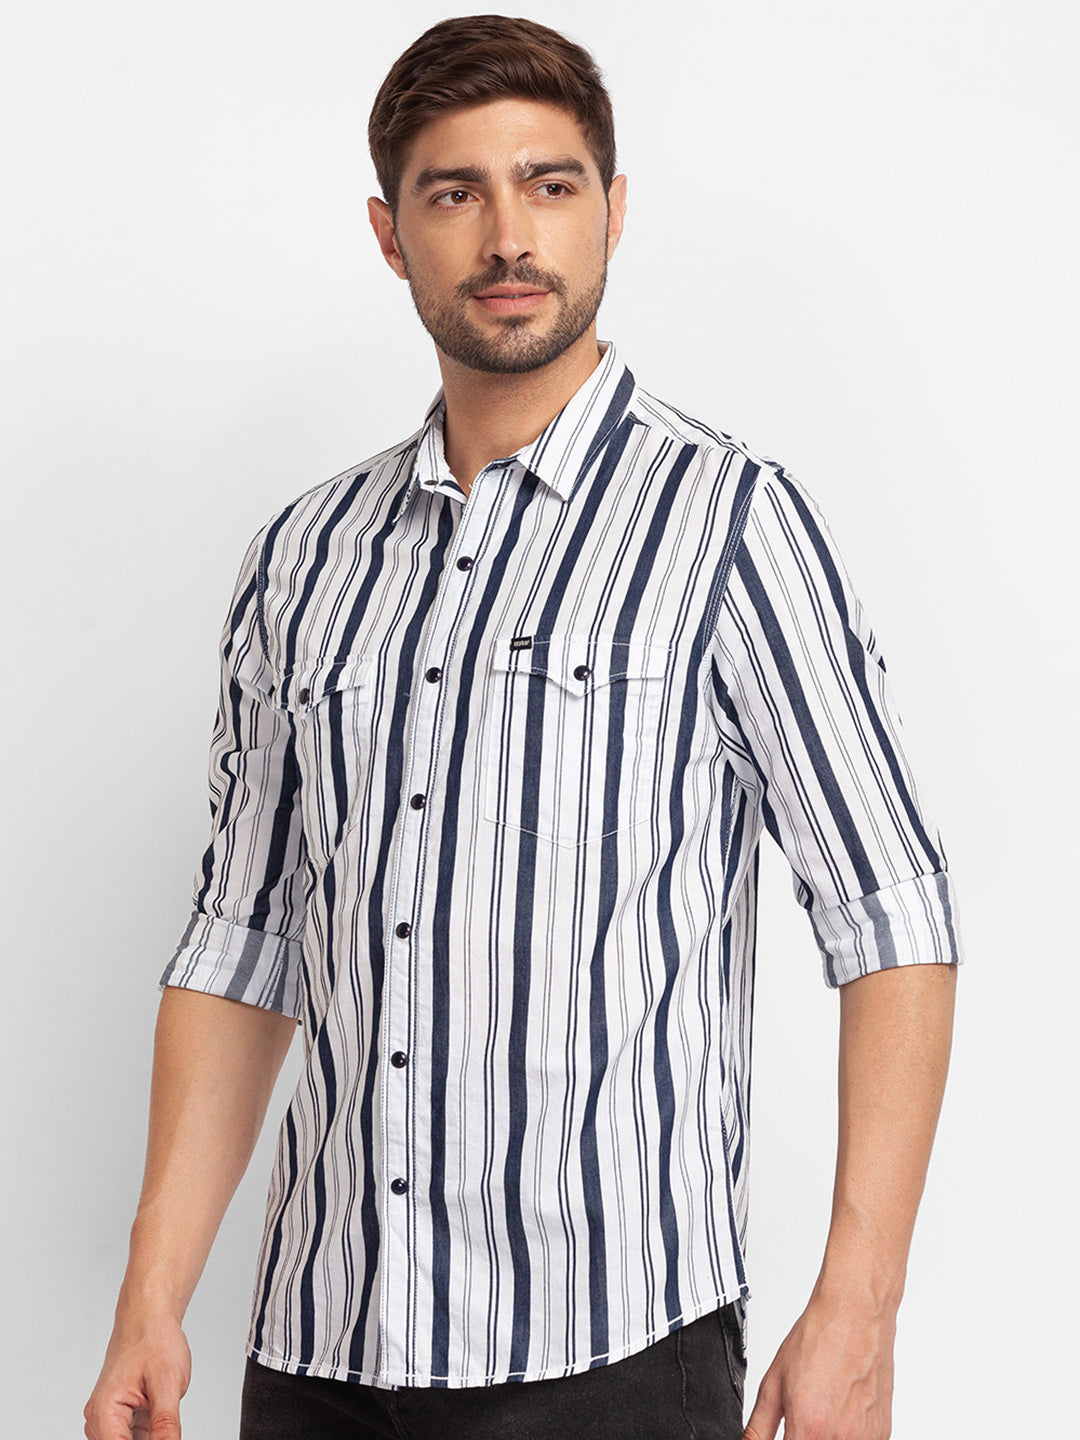 Spykar White Cotton Full Sleeve Stripes Shirt For Men